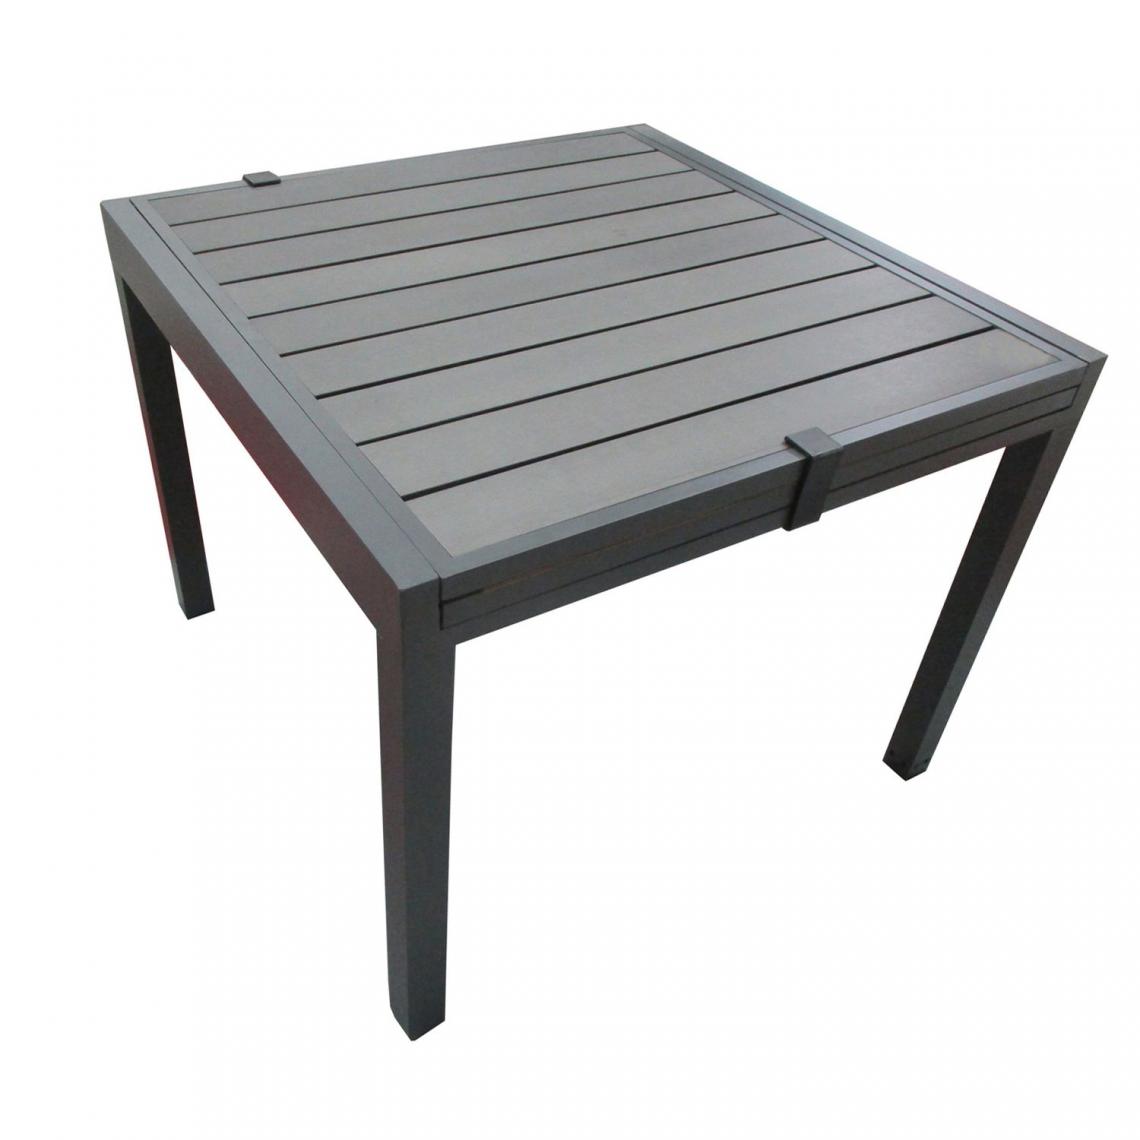 Toilinux - Table de jardin extensible en aluminium avec plateau composite Byron de 4 à 8 personnes - Gris Anthracite - Tables de jardin